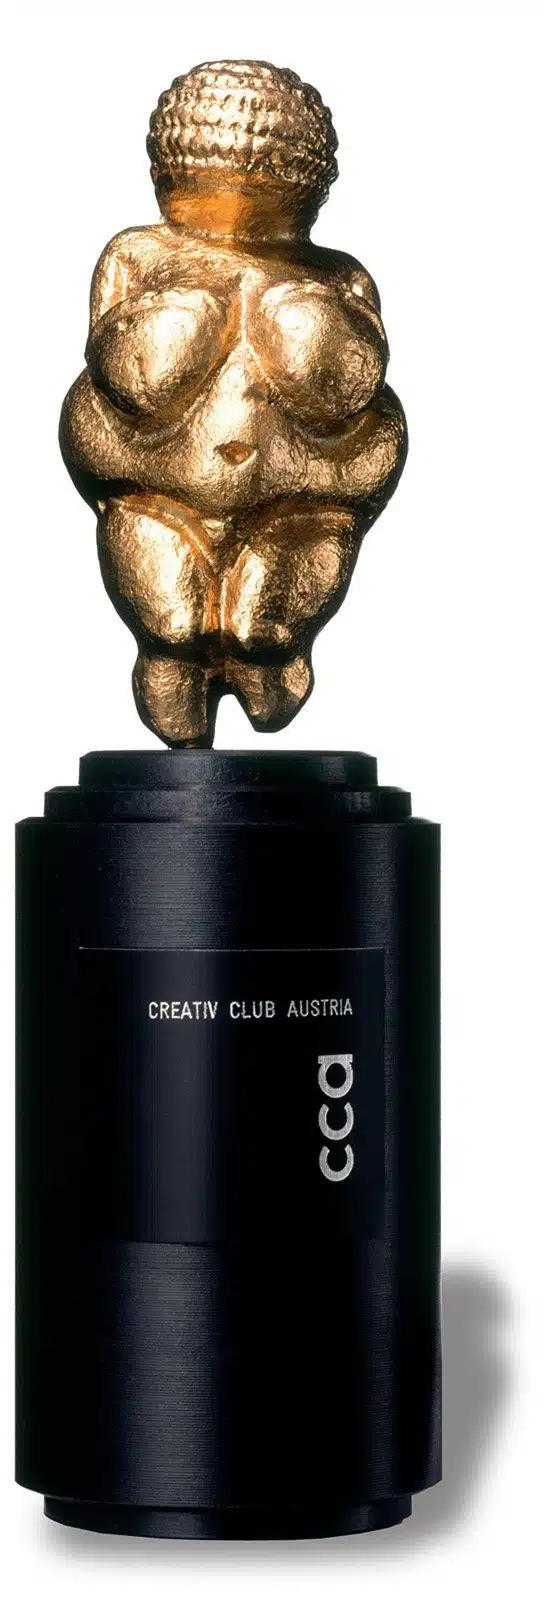 CCA Venus Awards werden vom Creativ Club Austria verliehen